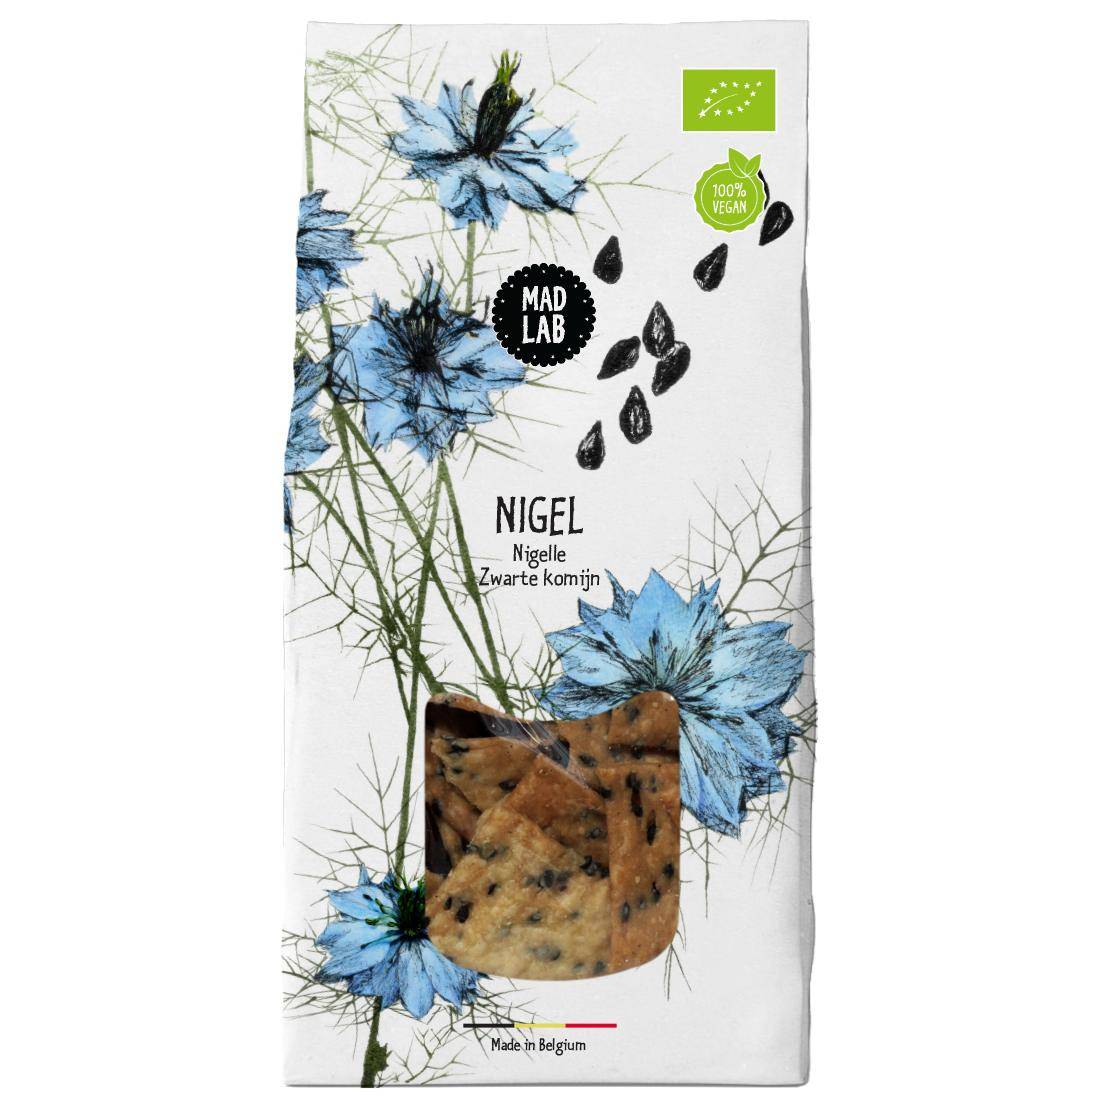 Mad Lab vegane Cracker mit Schwarzkümmel – Verpackung aus weissem Papier mit farbiger, naturalistischer Illustration von Schwarzkümmel und blauen Blüten. 